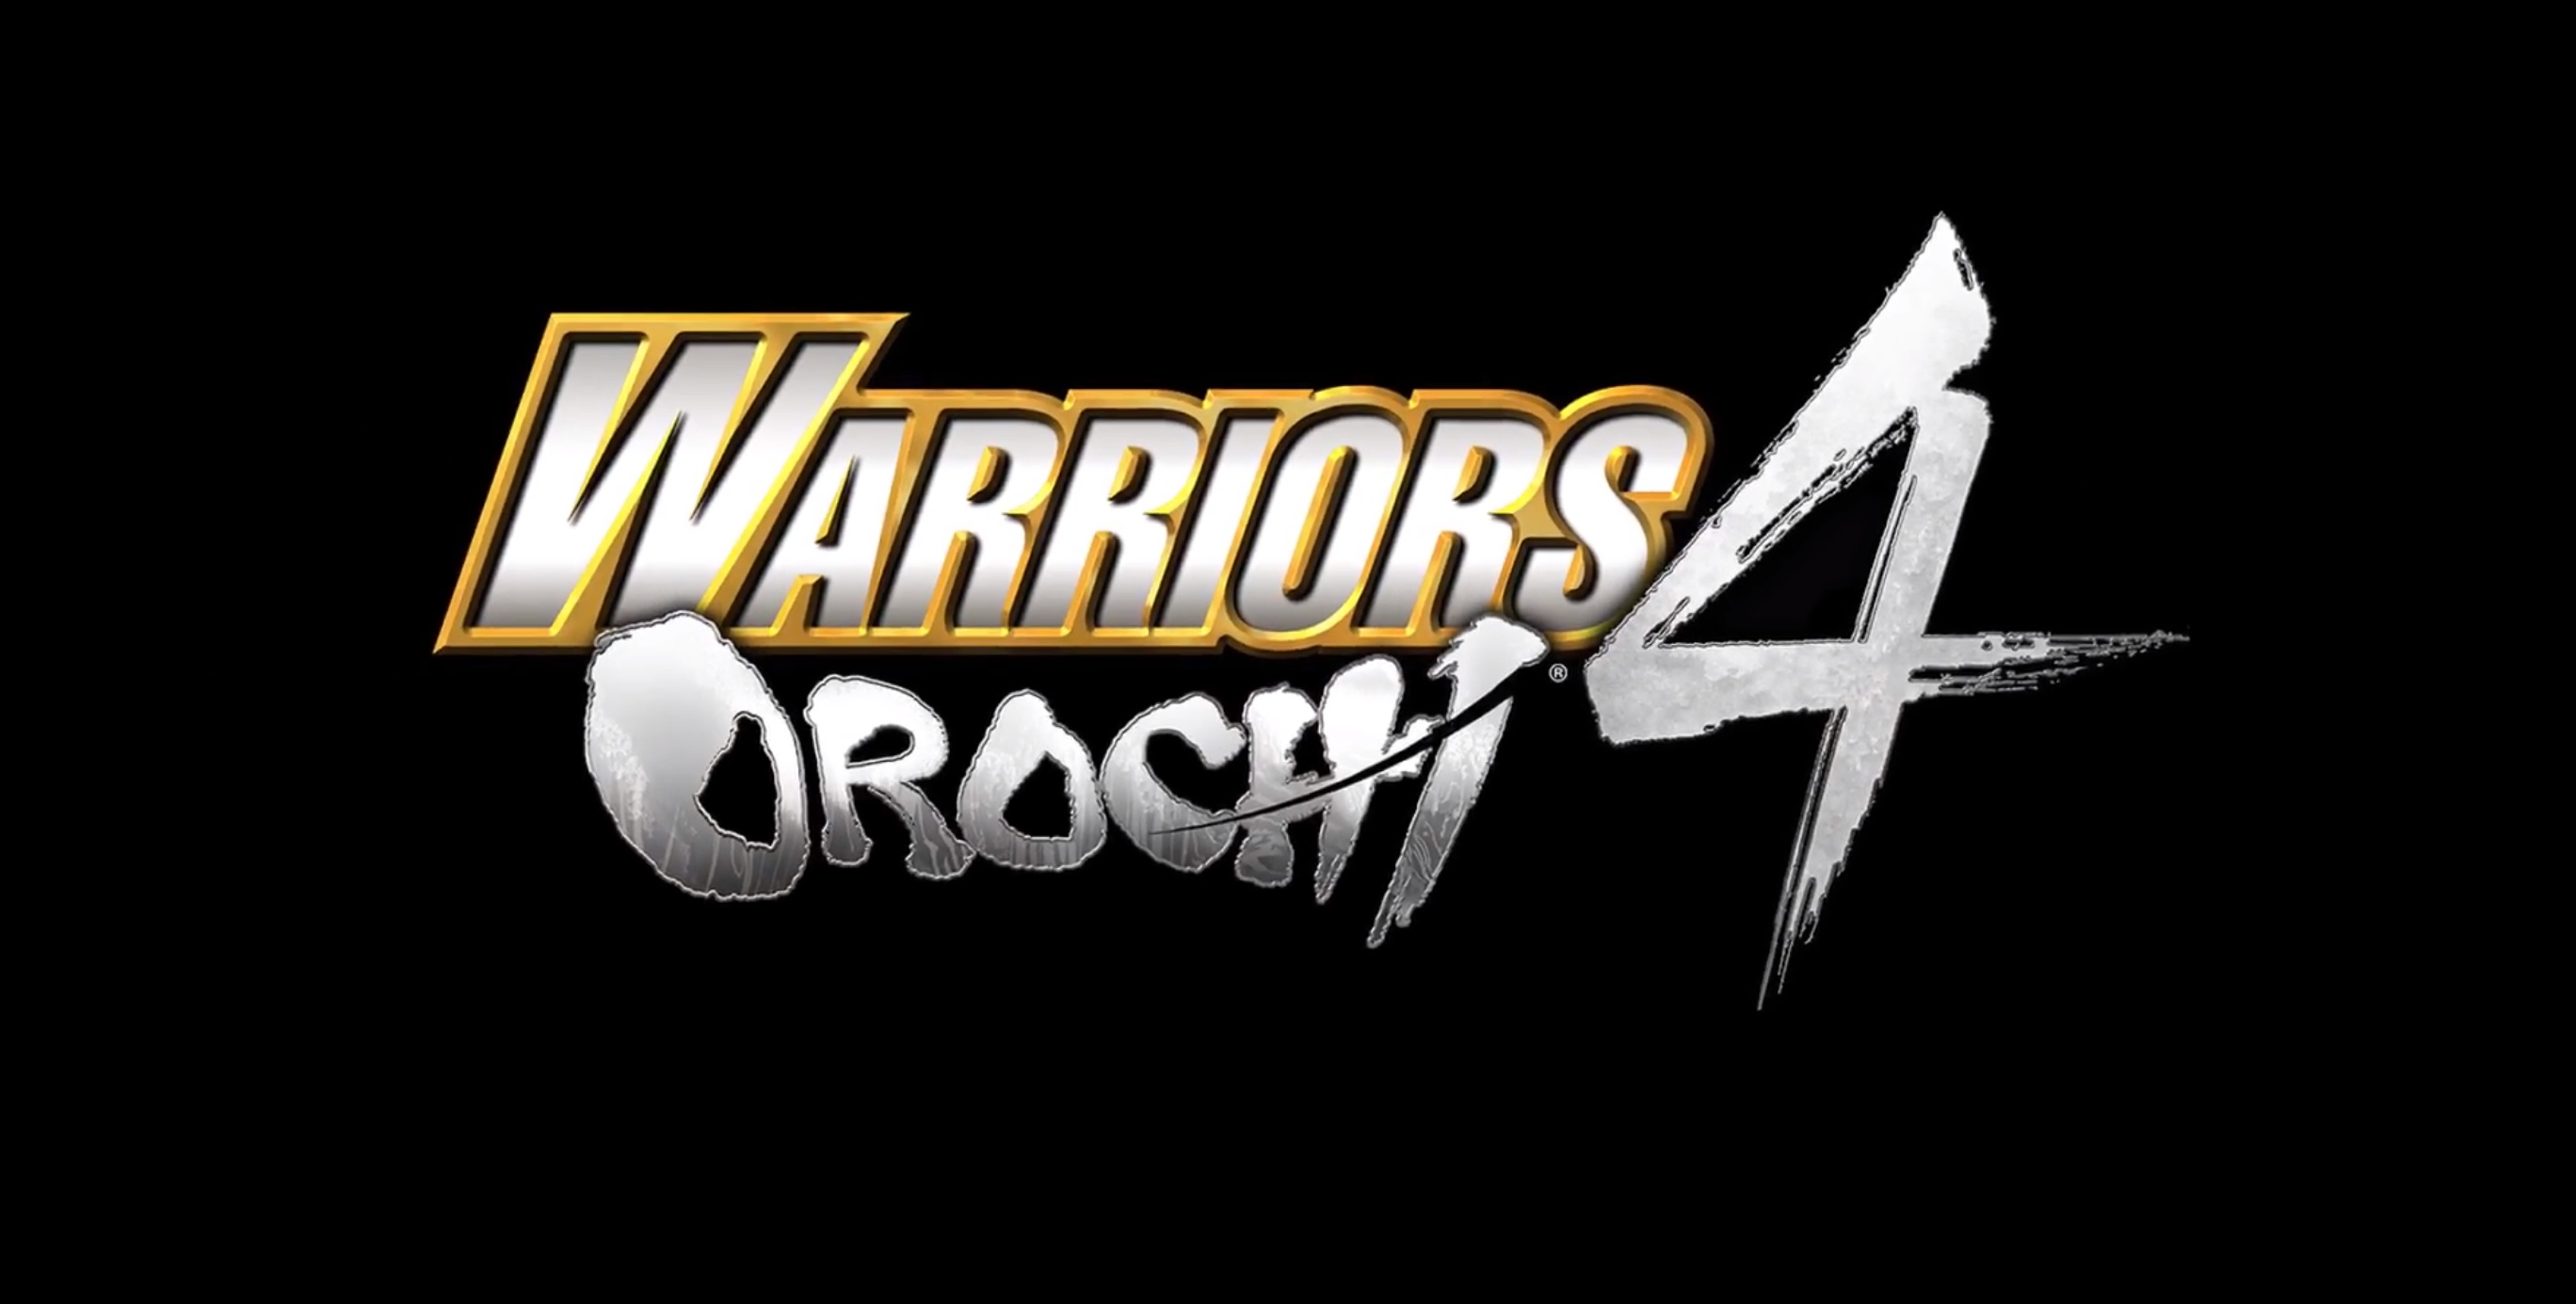 warriors-orochi-4-se-estrenara-en-octubre-frikigamers.com